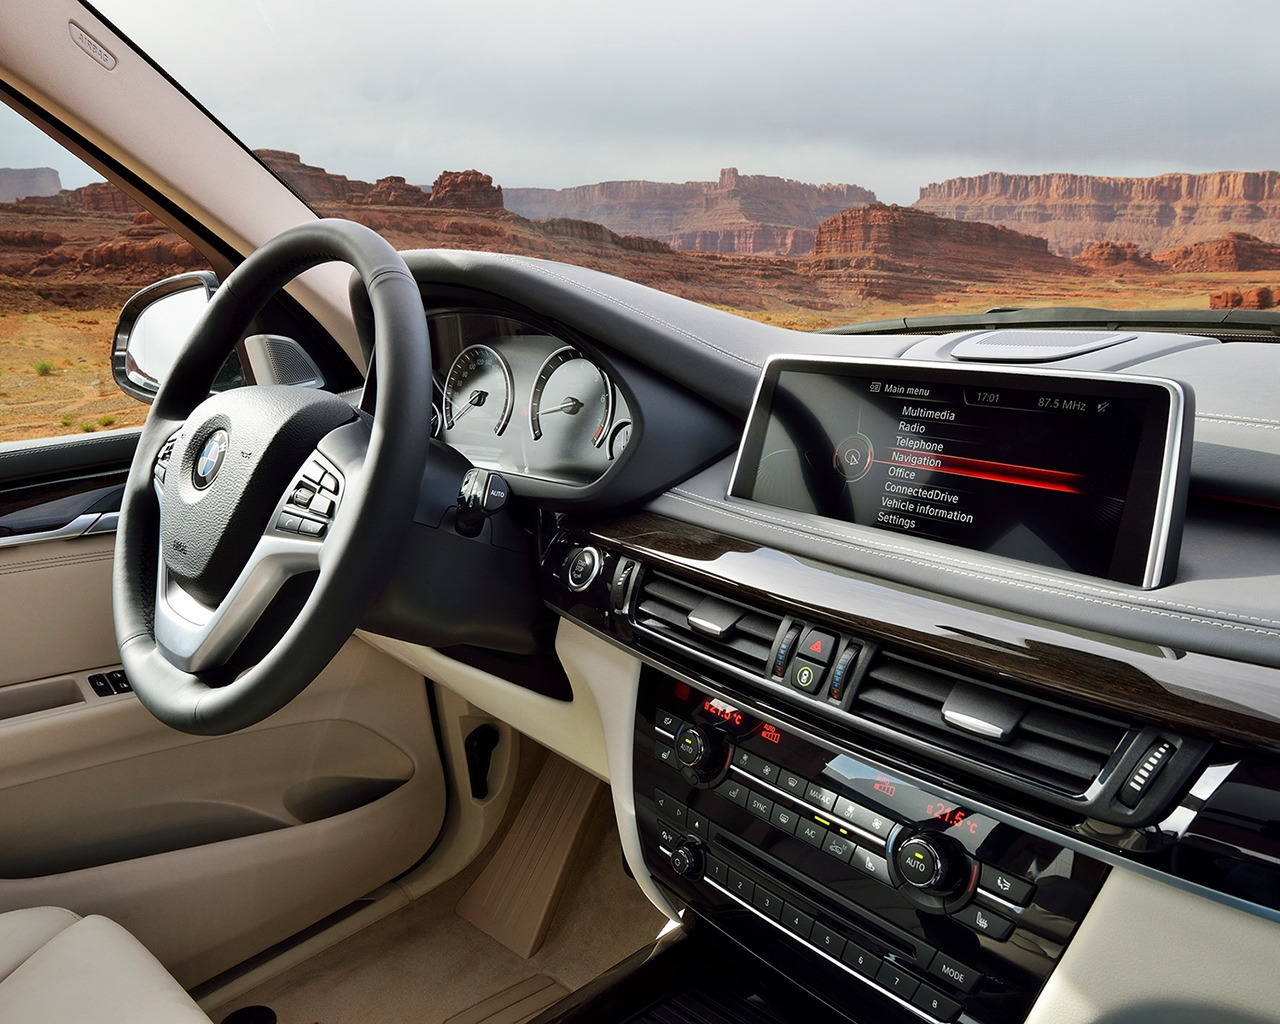 BMW X5 2014 Dashboard for 1280 x 1024 resolution